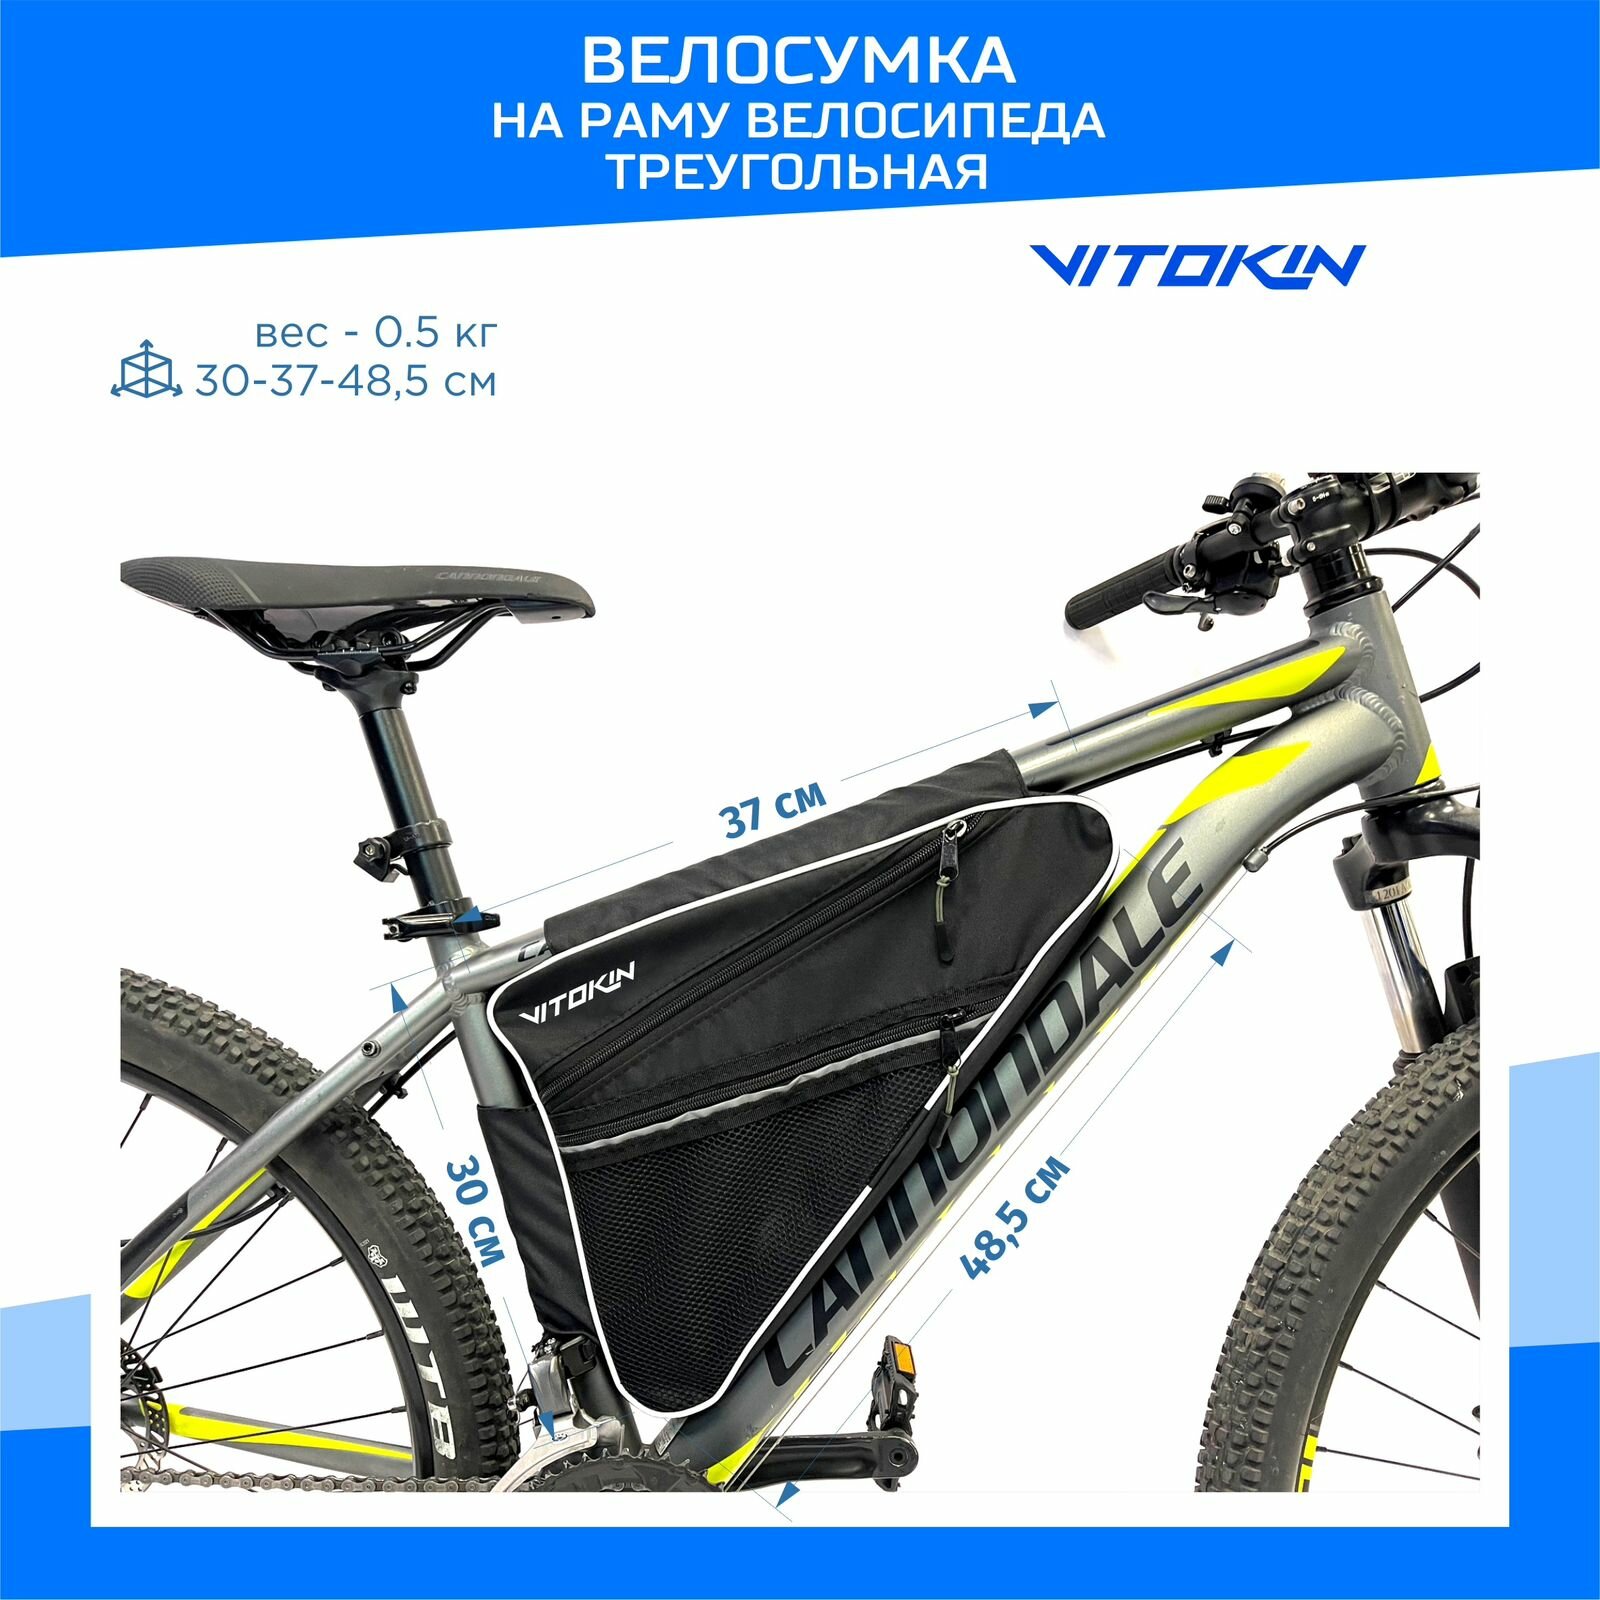 Велосумка на раму большая для велосипеда, треугольная VITOKIN Черная